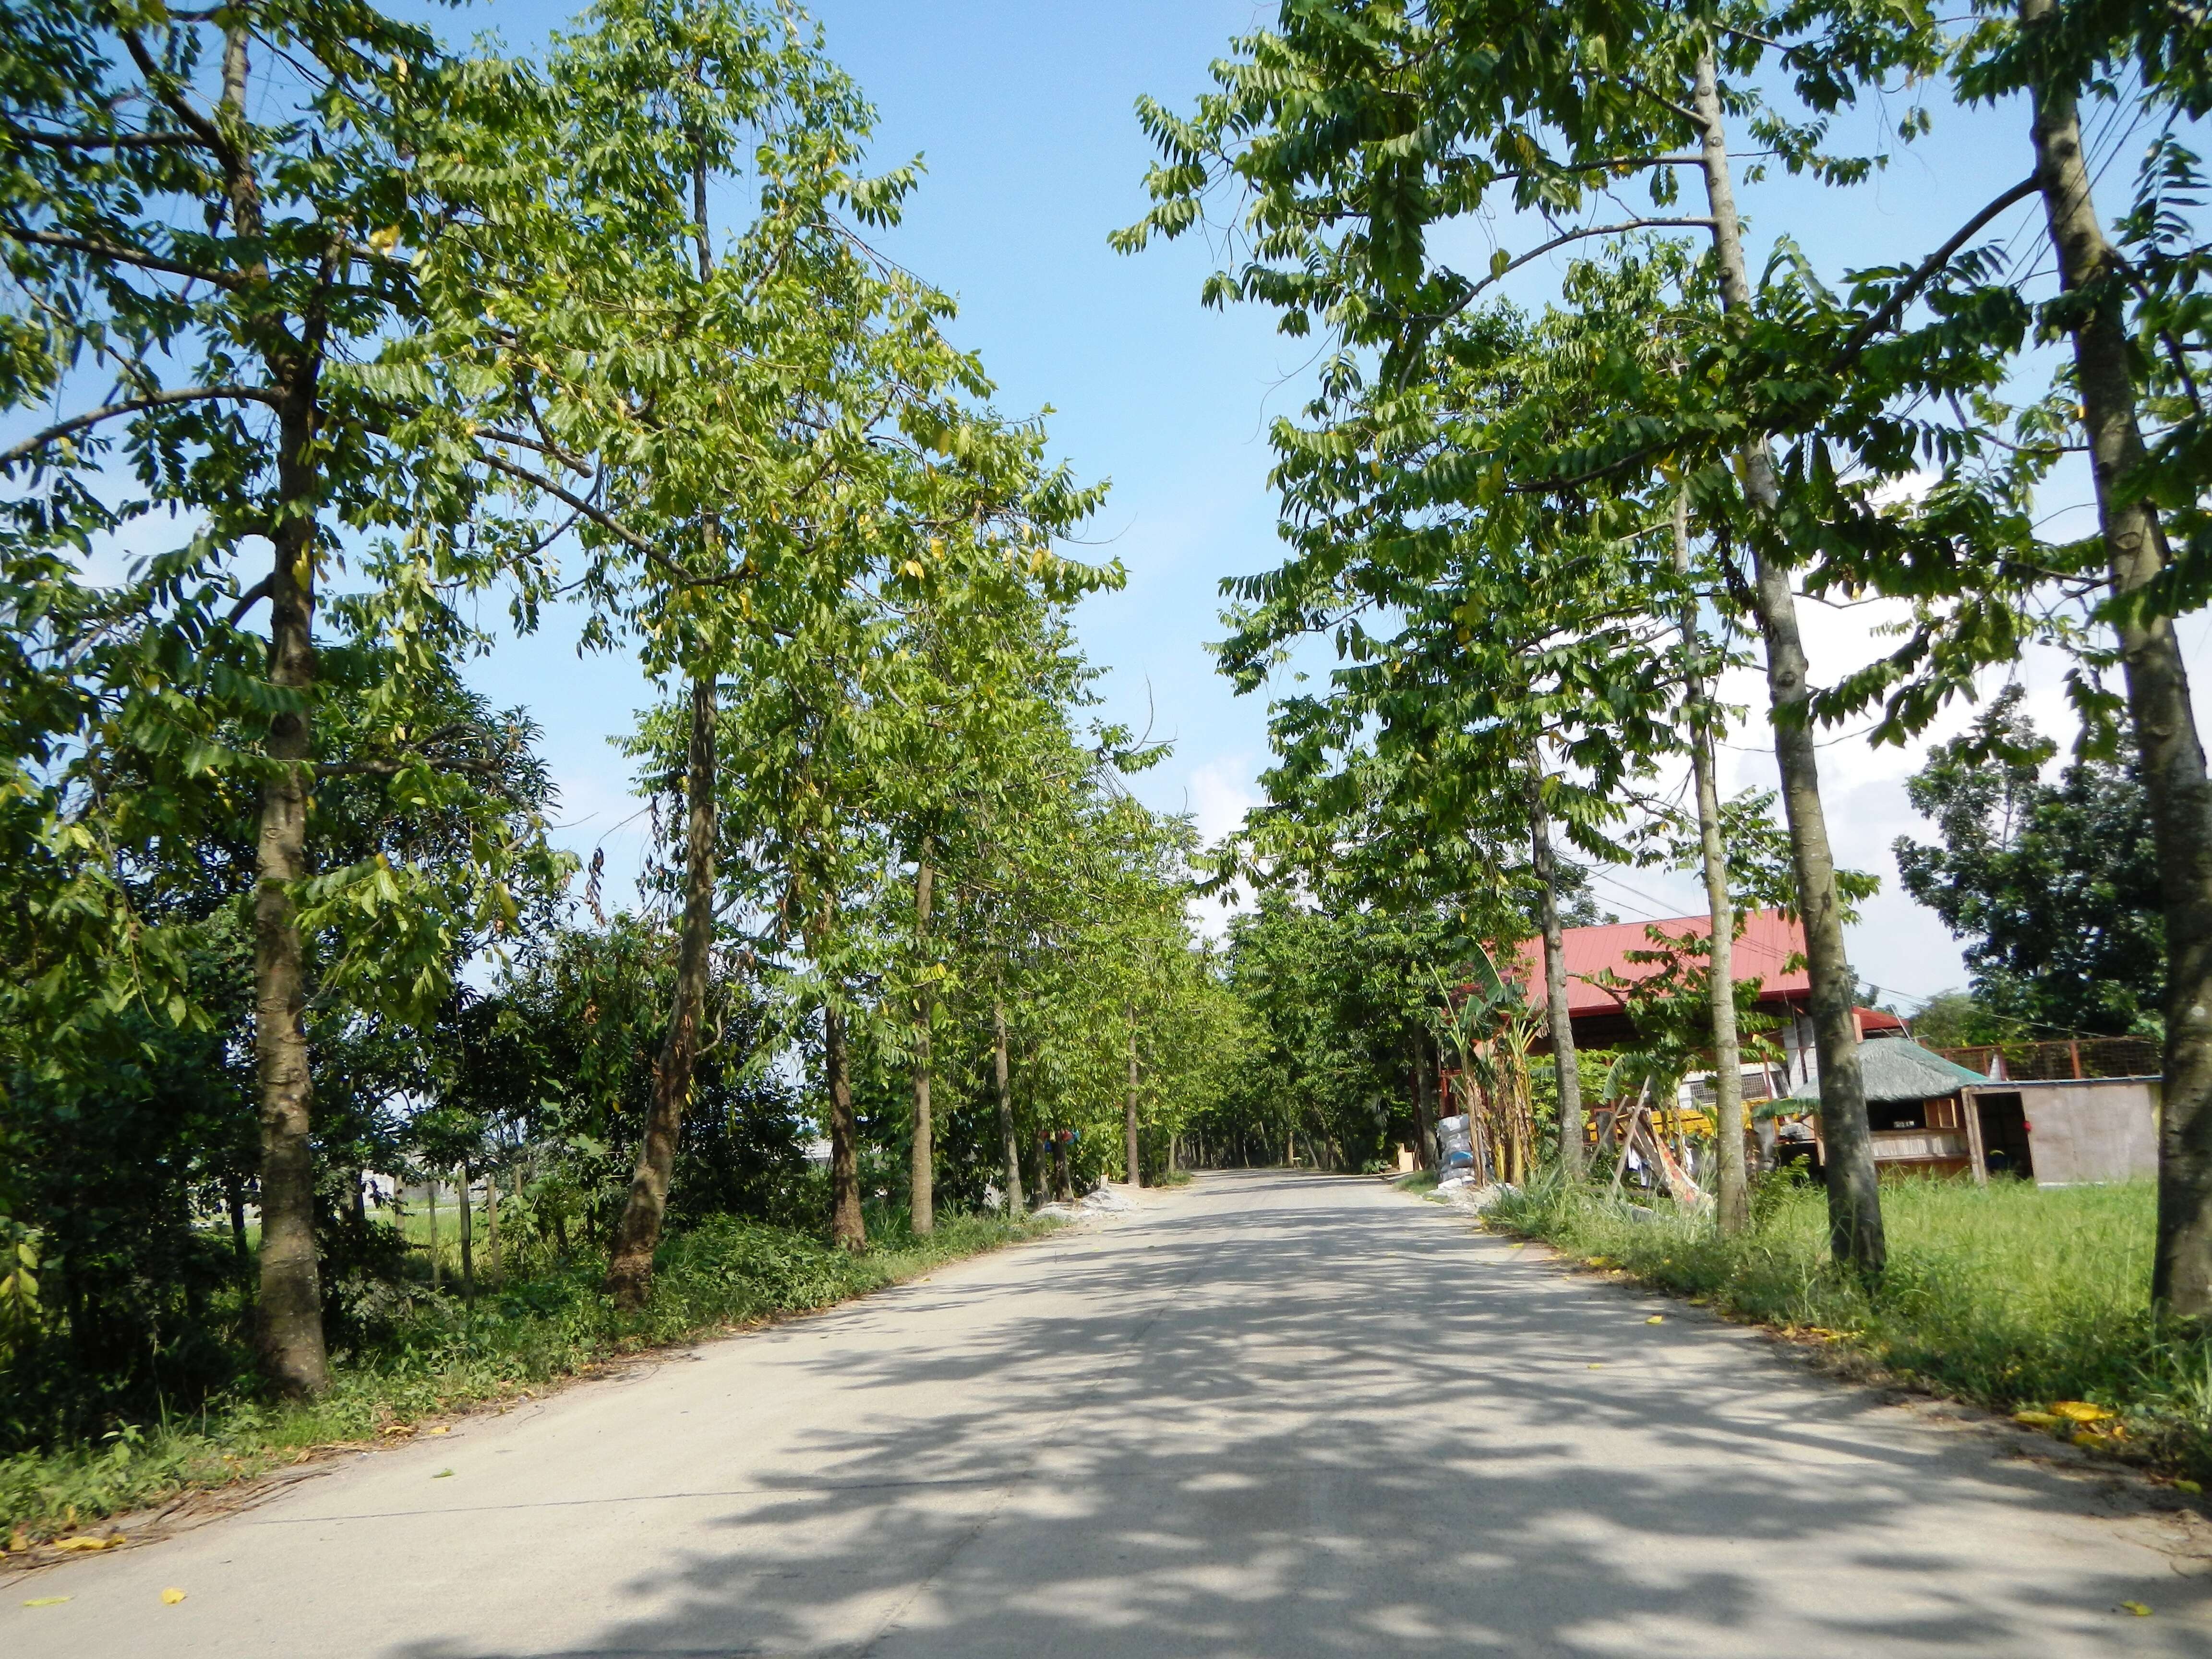 Image of ilang-ilang